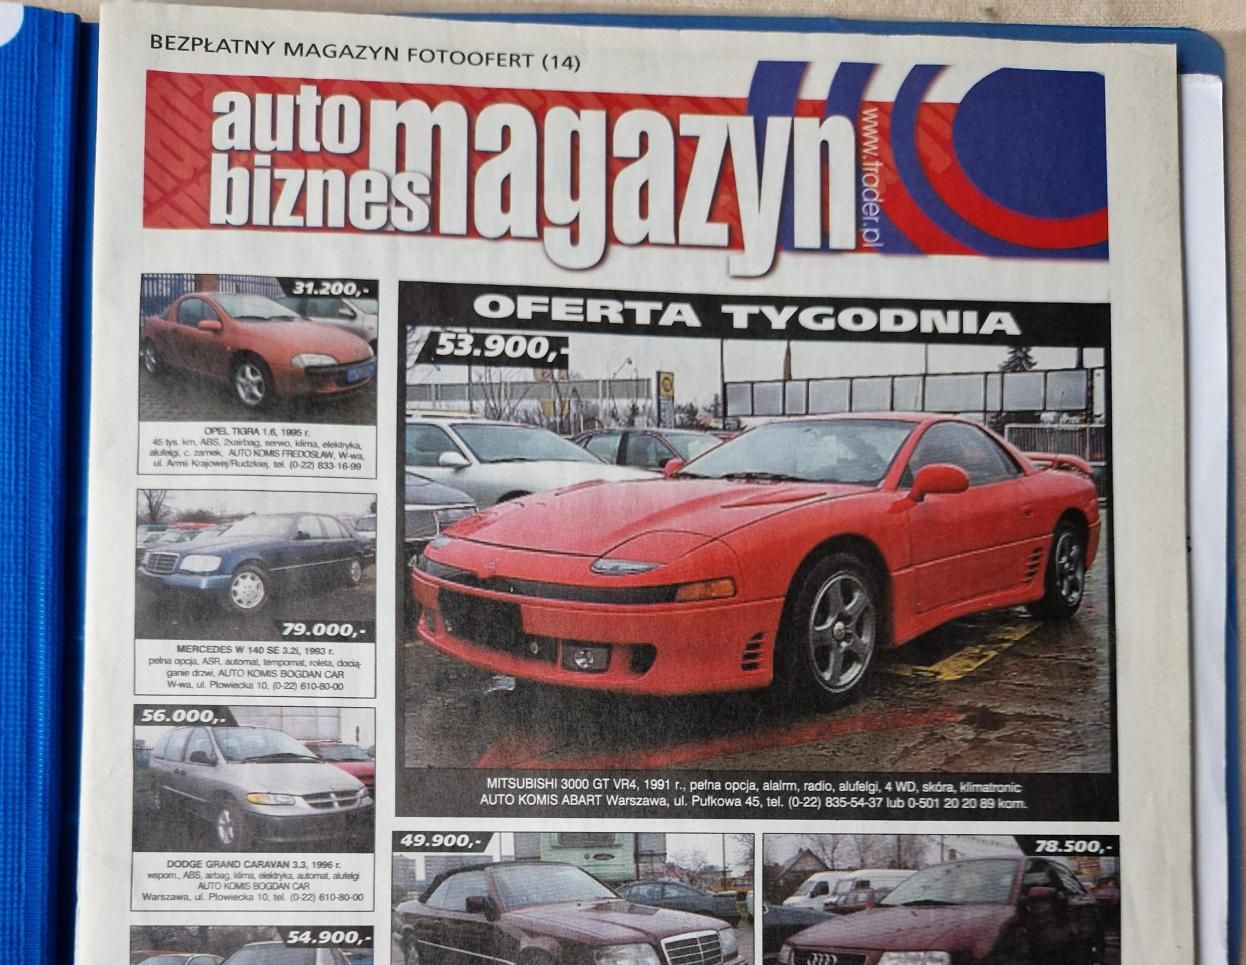 Zdjęcie bezpłatnego magazynu Auto Biznes, w którym jak dziś w Internecie, zamieszczano ogłoszenia sprzedaży aut. 